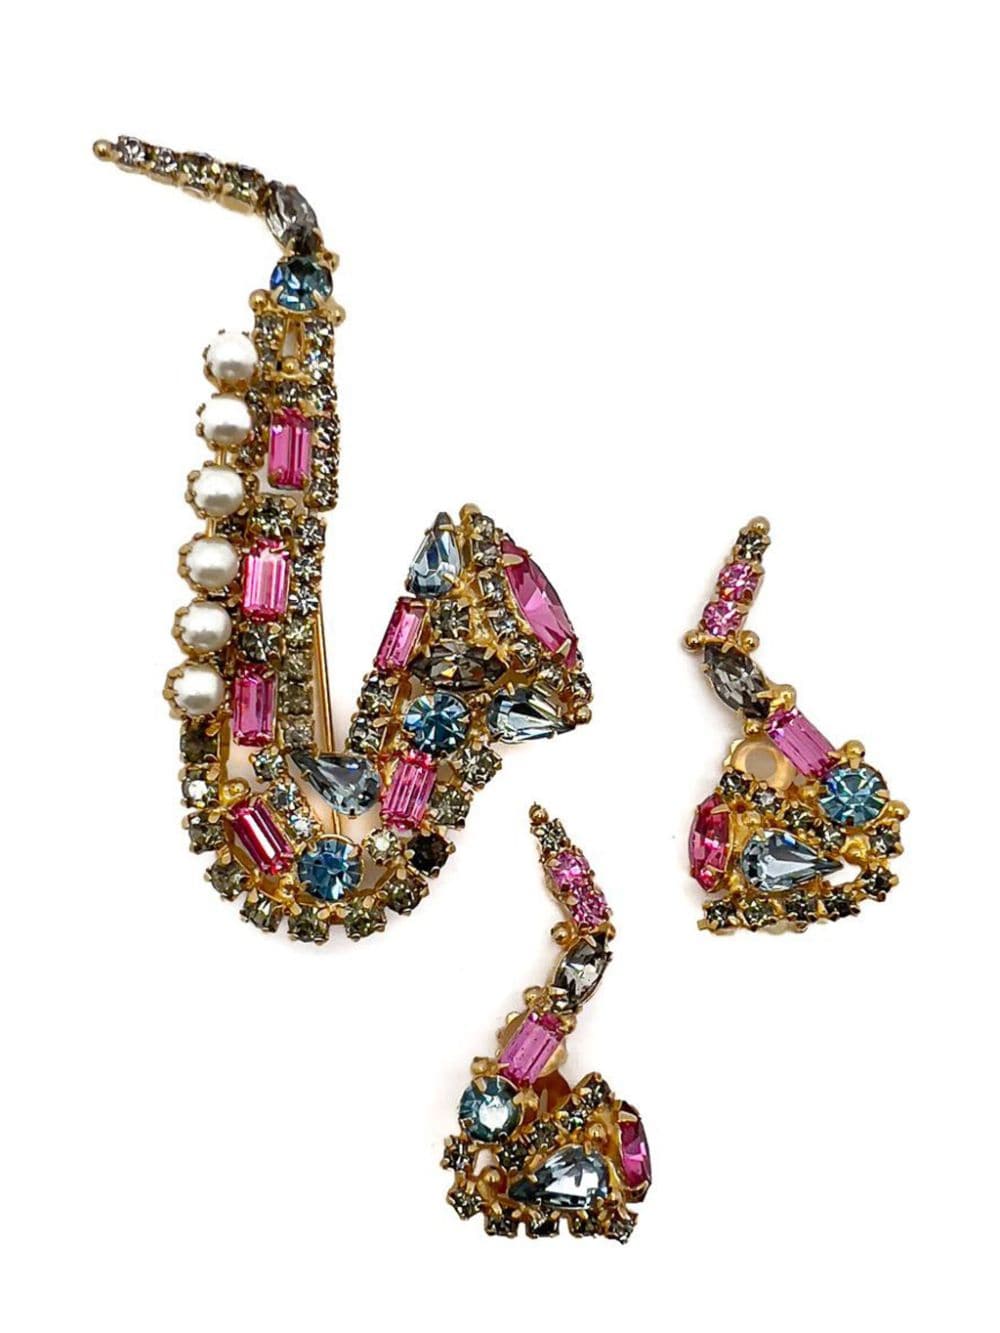 Jennifer Gibson Jewellery Vintage Original by Robert Crystal Saxophone Brooch & Earrings 1960s - Pink von Jennifer Gibson Jewellery